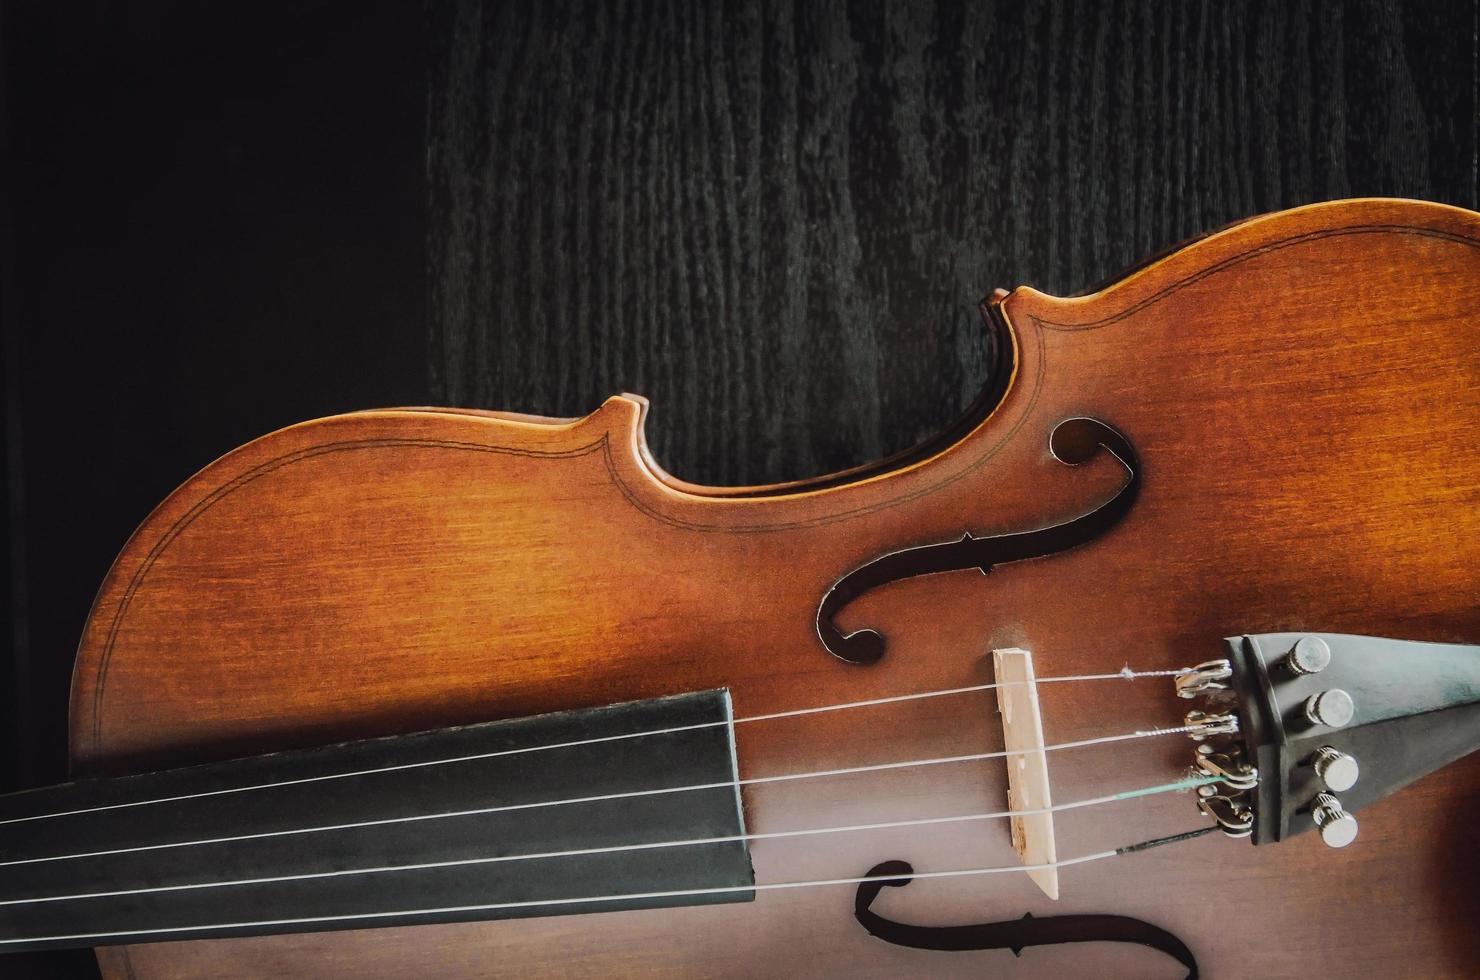 il violino sul tavolo, strumento musicale classico utilizzato nell'orchestra. foto